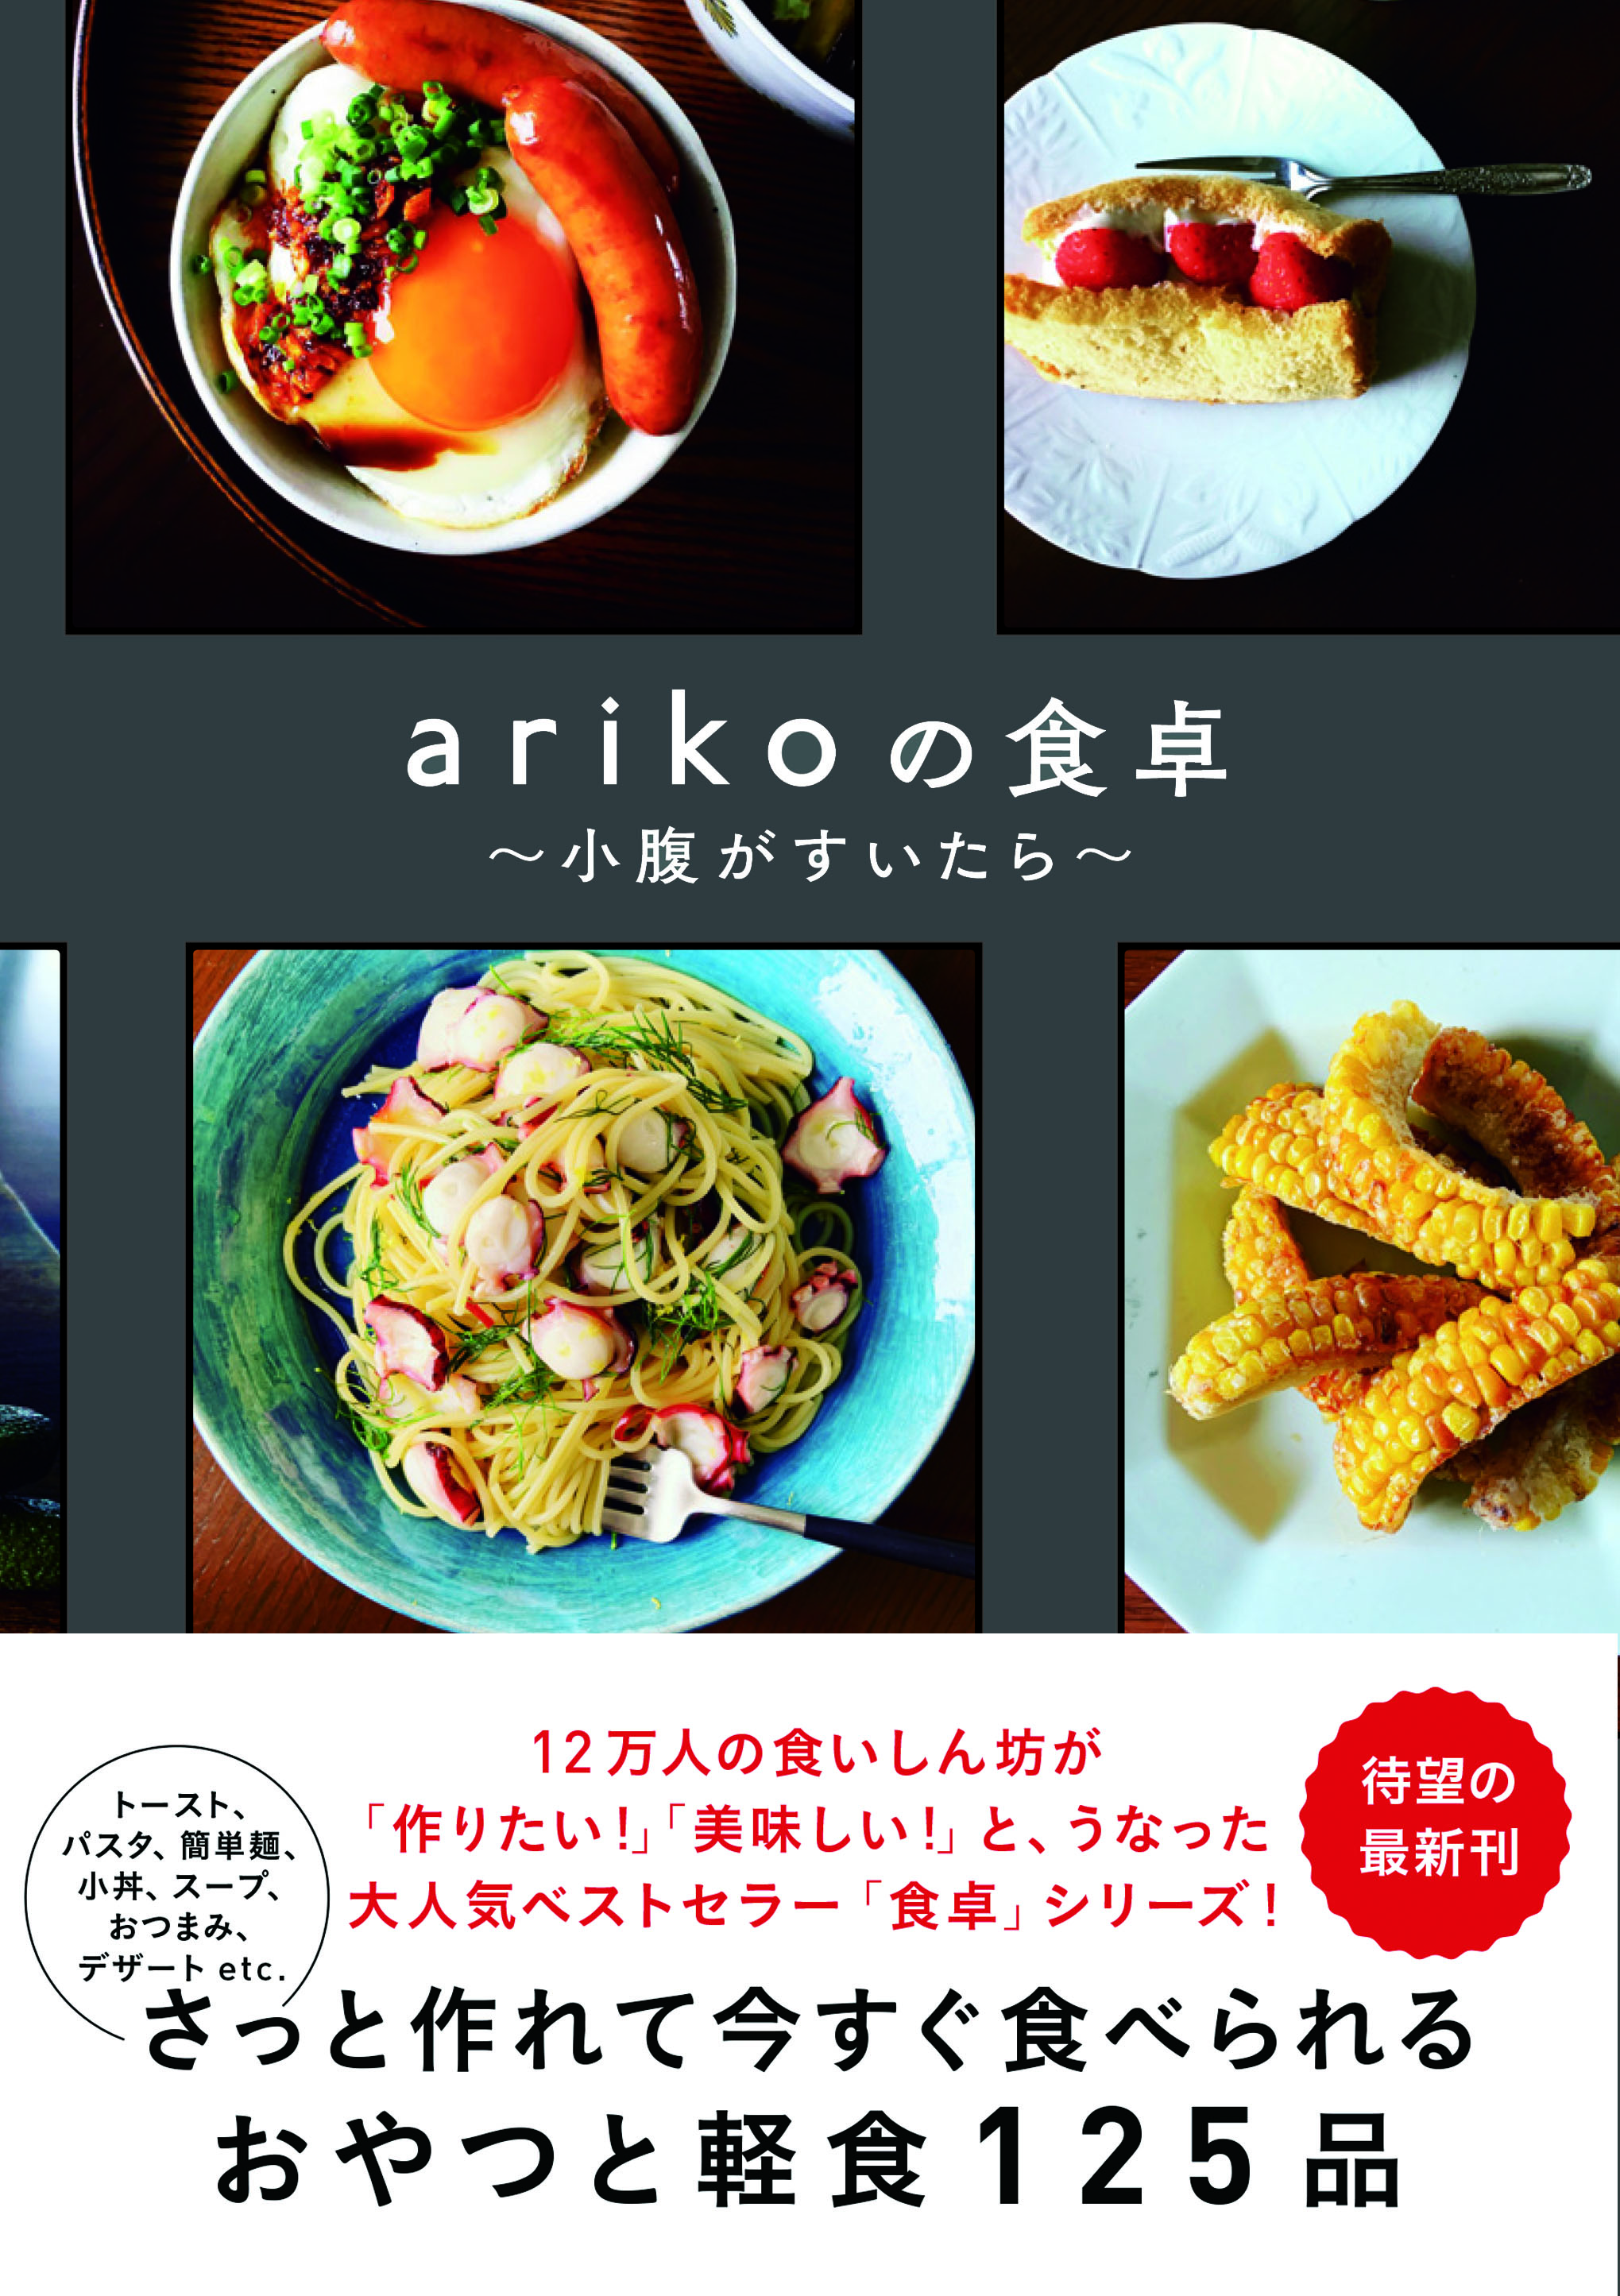 小腹がすいた時に♪ インスタで大人気・arikoさんのレシピ「グリルドツナメルトサンド」 098-H1-ariko.jpg